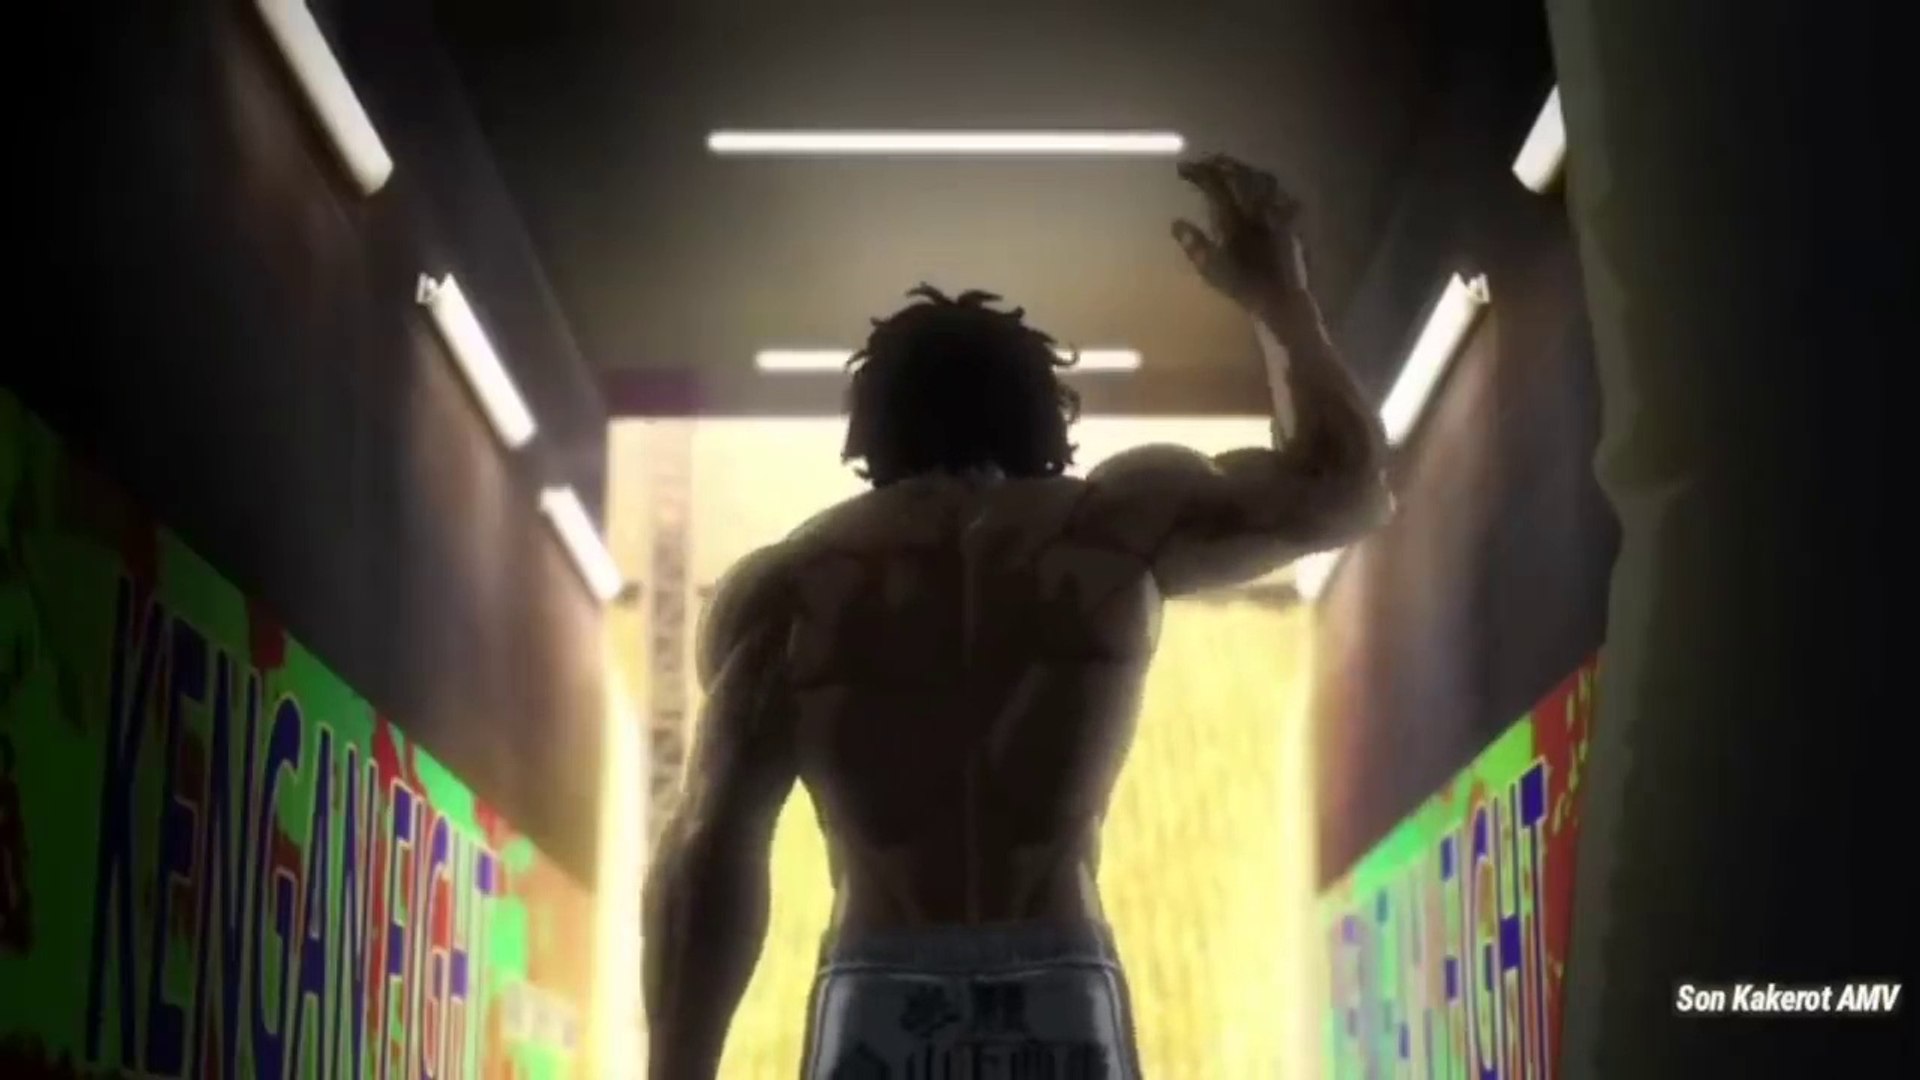 Kengan Ashura Trailer - Anime Series - video Dailymotion